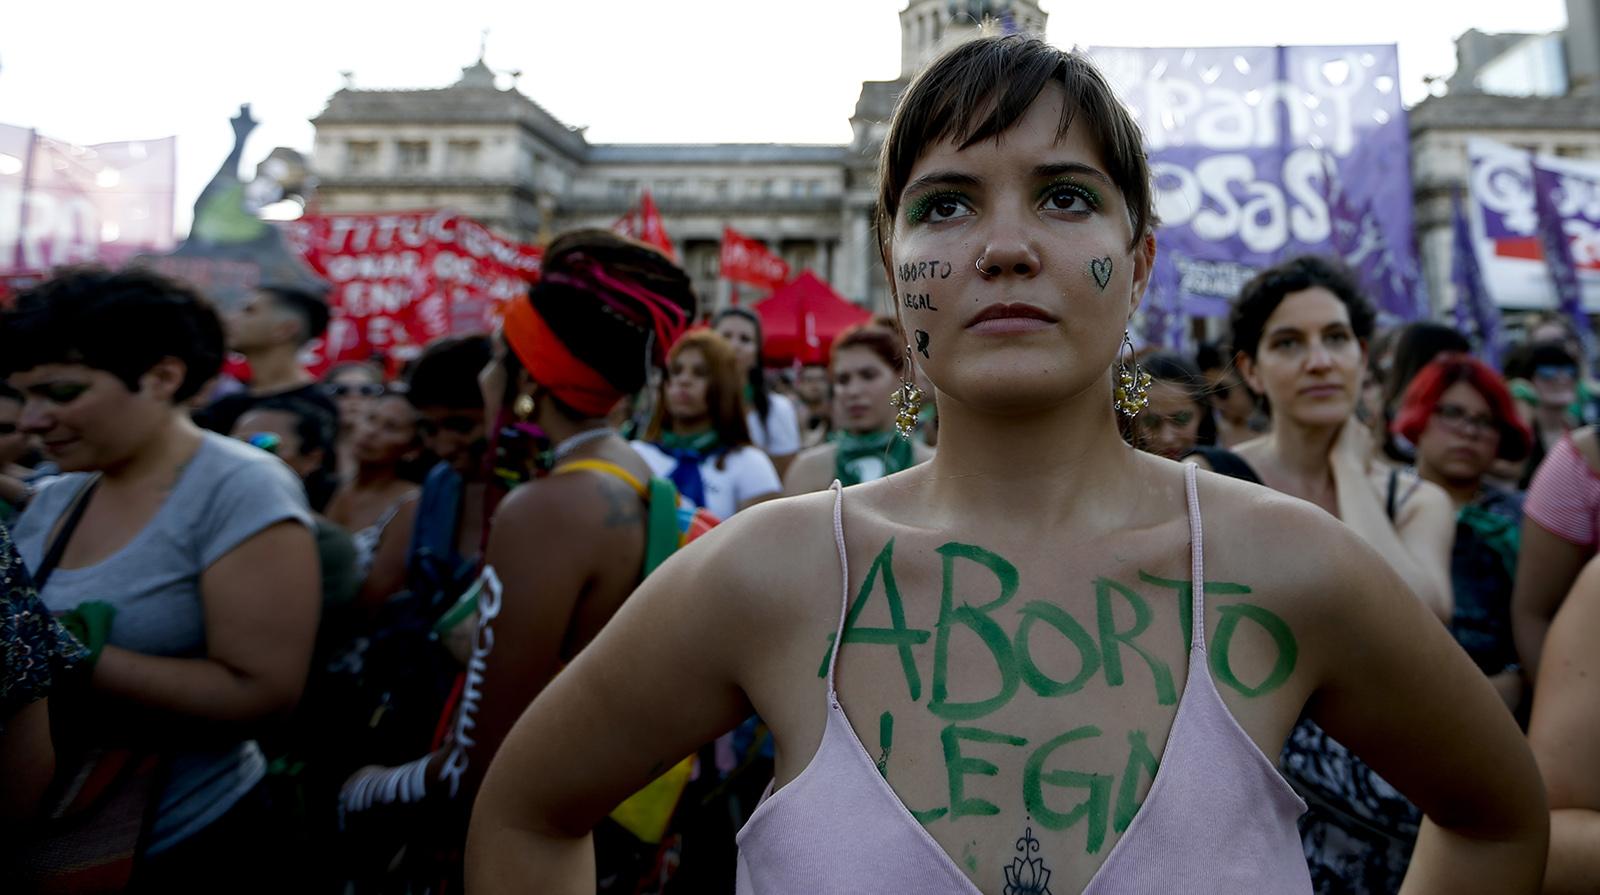 Kvinna med texten ”Laglig abort” vid en demonstration för fri abort. 